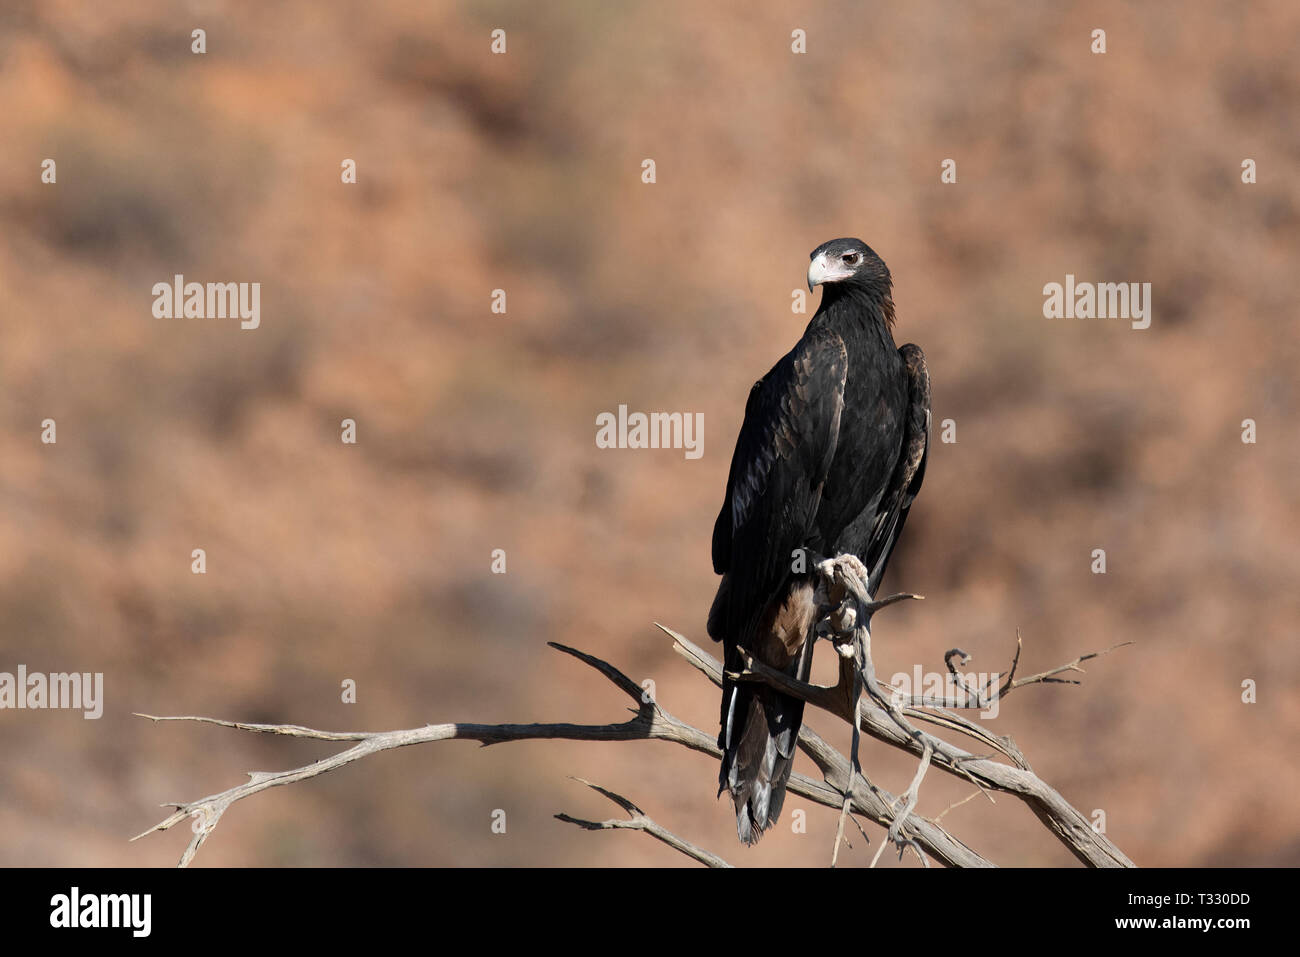 Wedge tailed eagle, Gammon ranges,SA, Australia Stock Photo